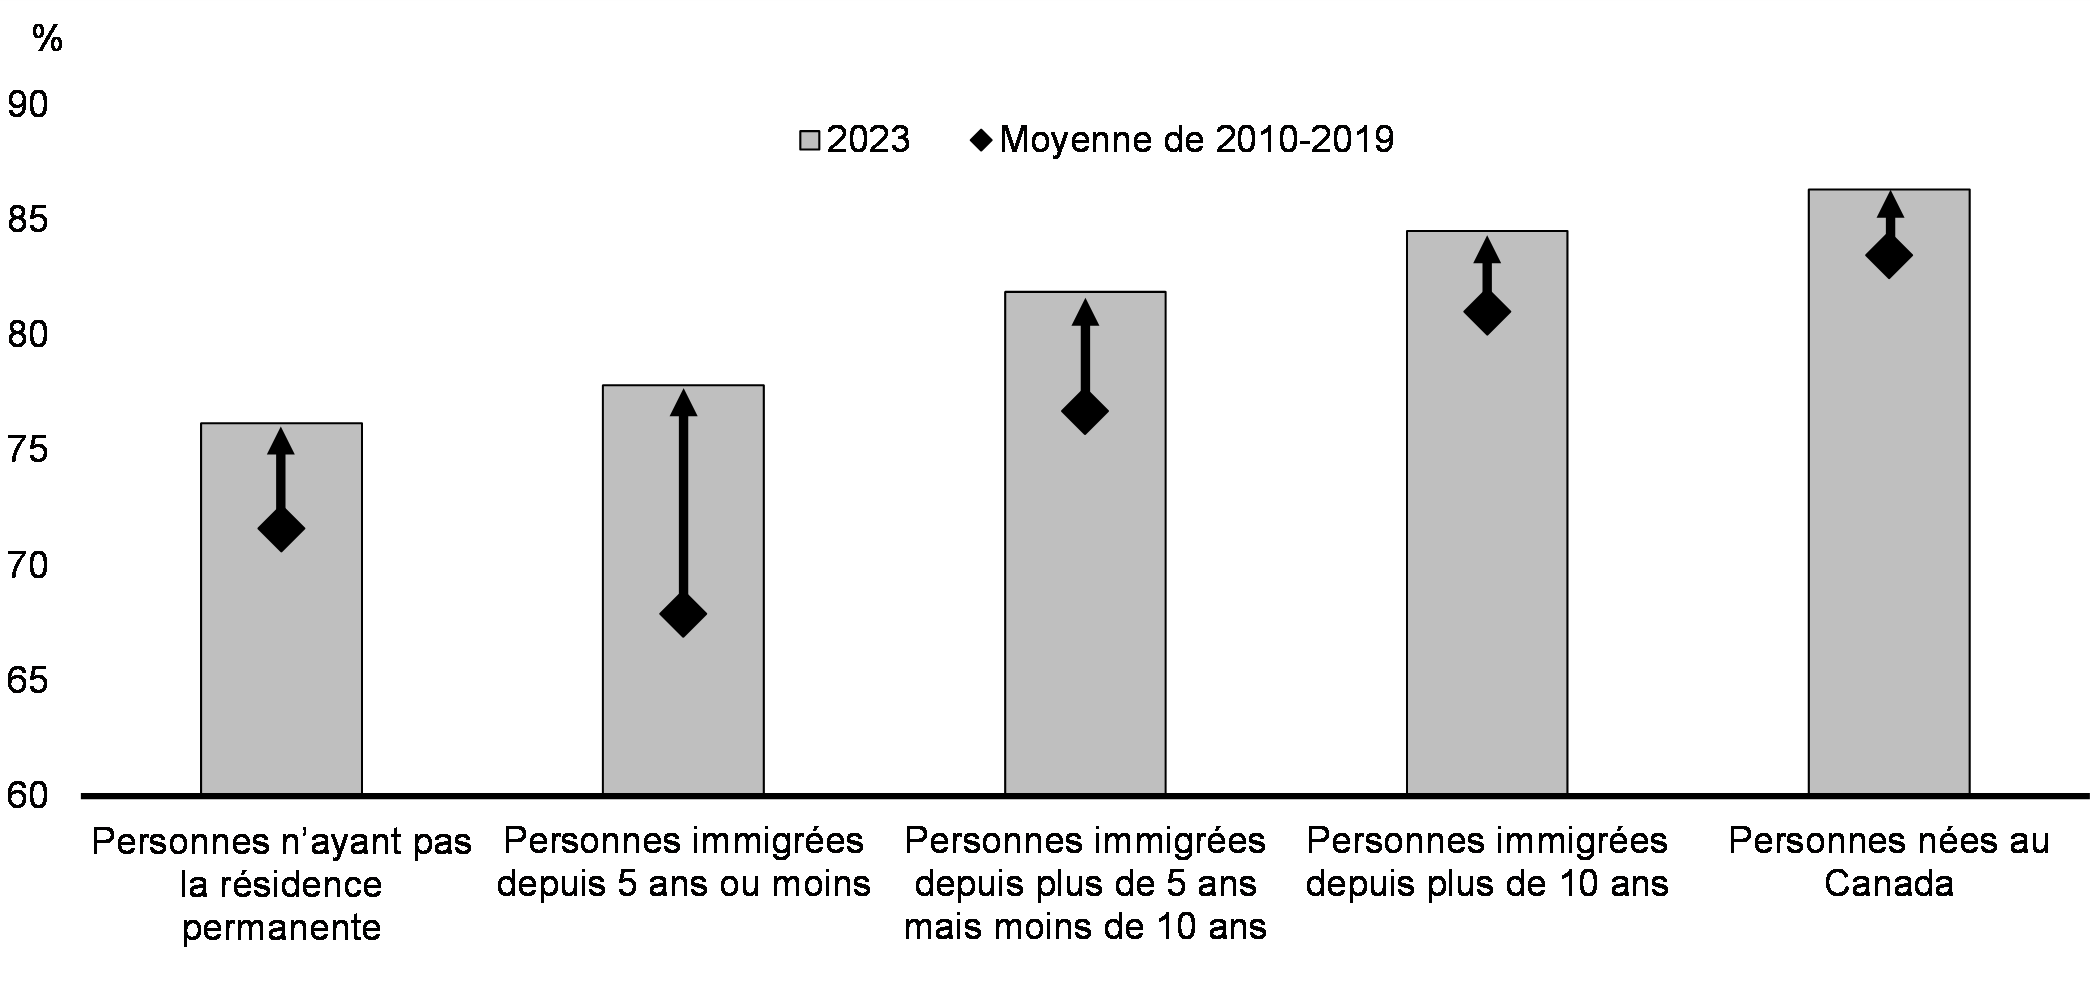 Graphique 15 : Taux d'emploi des personnes immigrantes au Canada